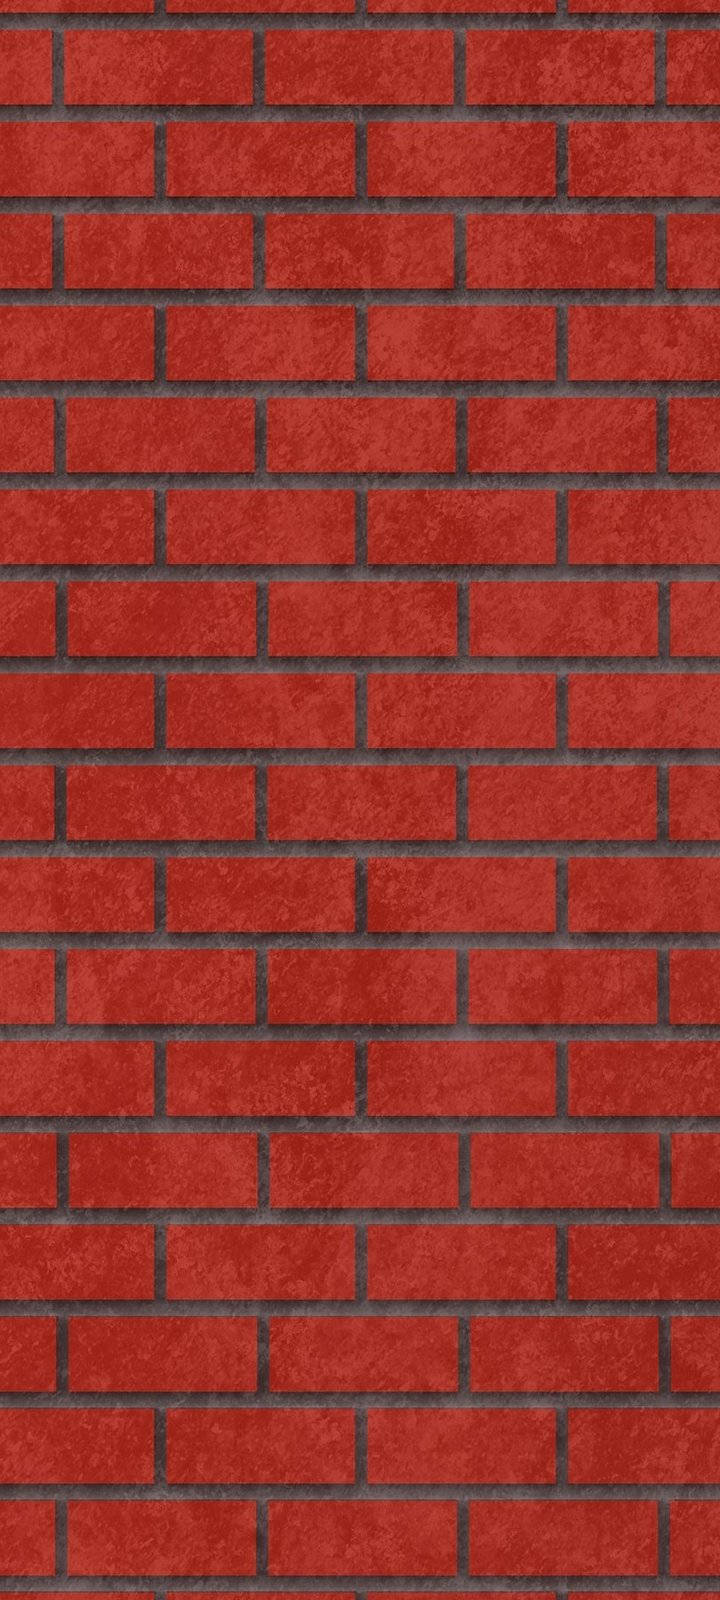 Vivo Y20 Red Brick Wall Wallpaper